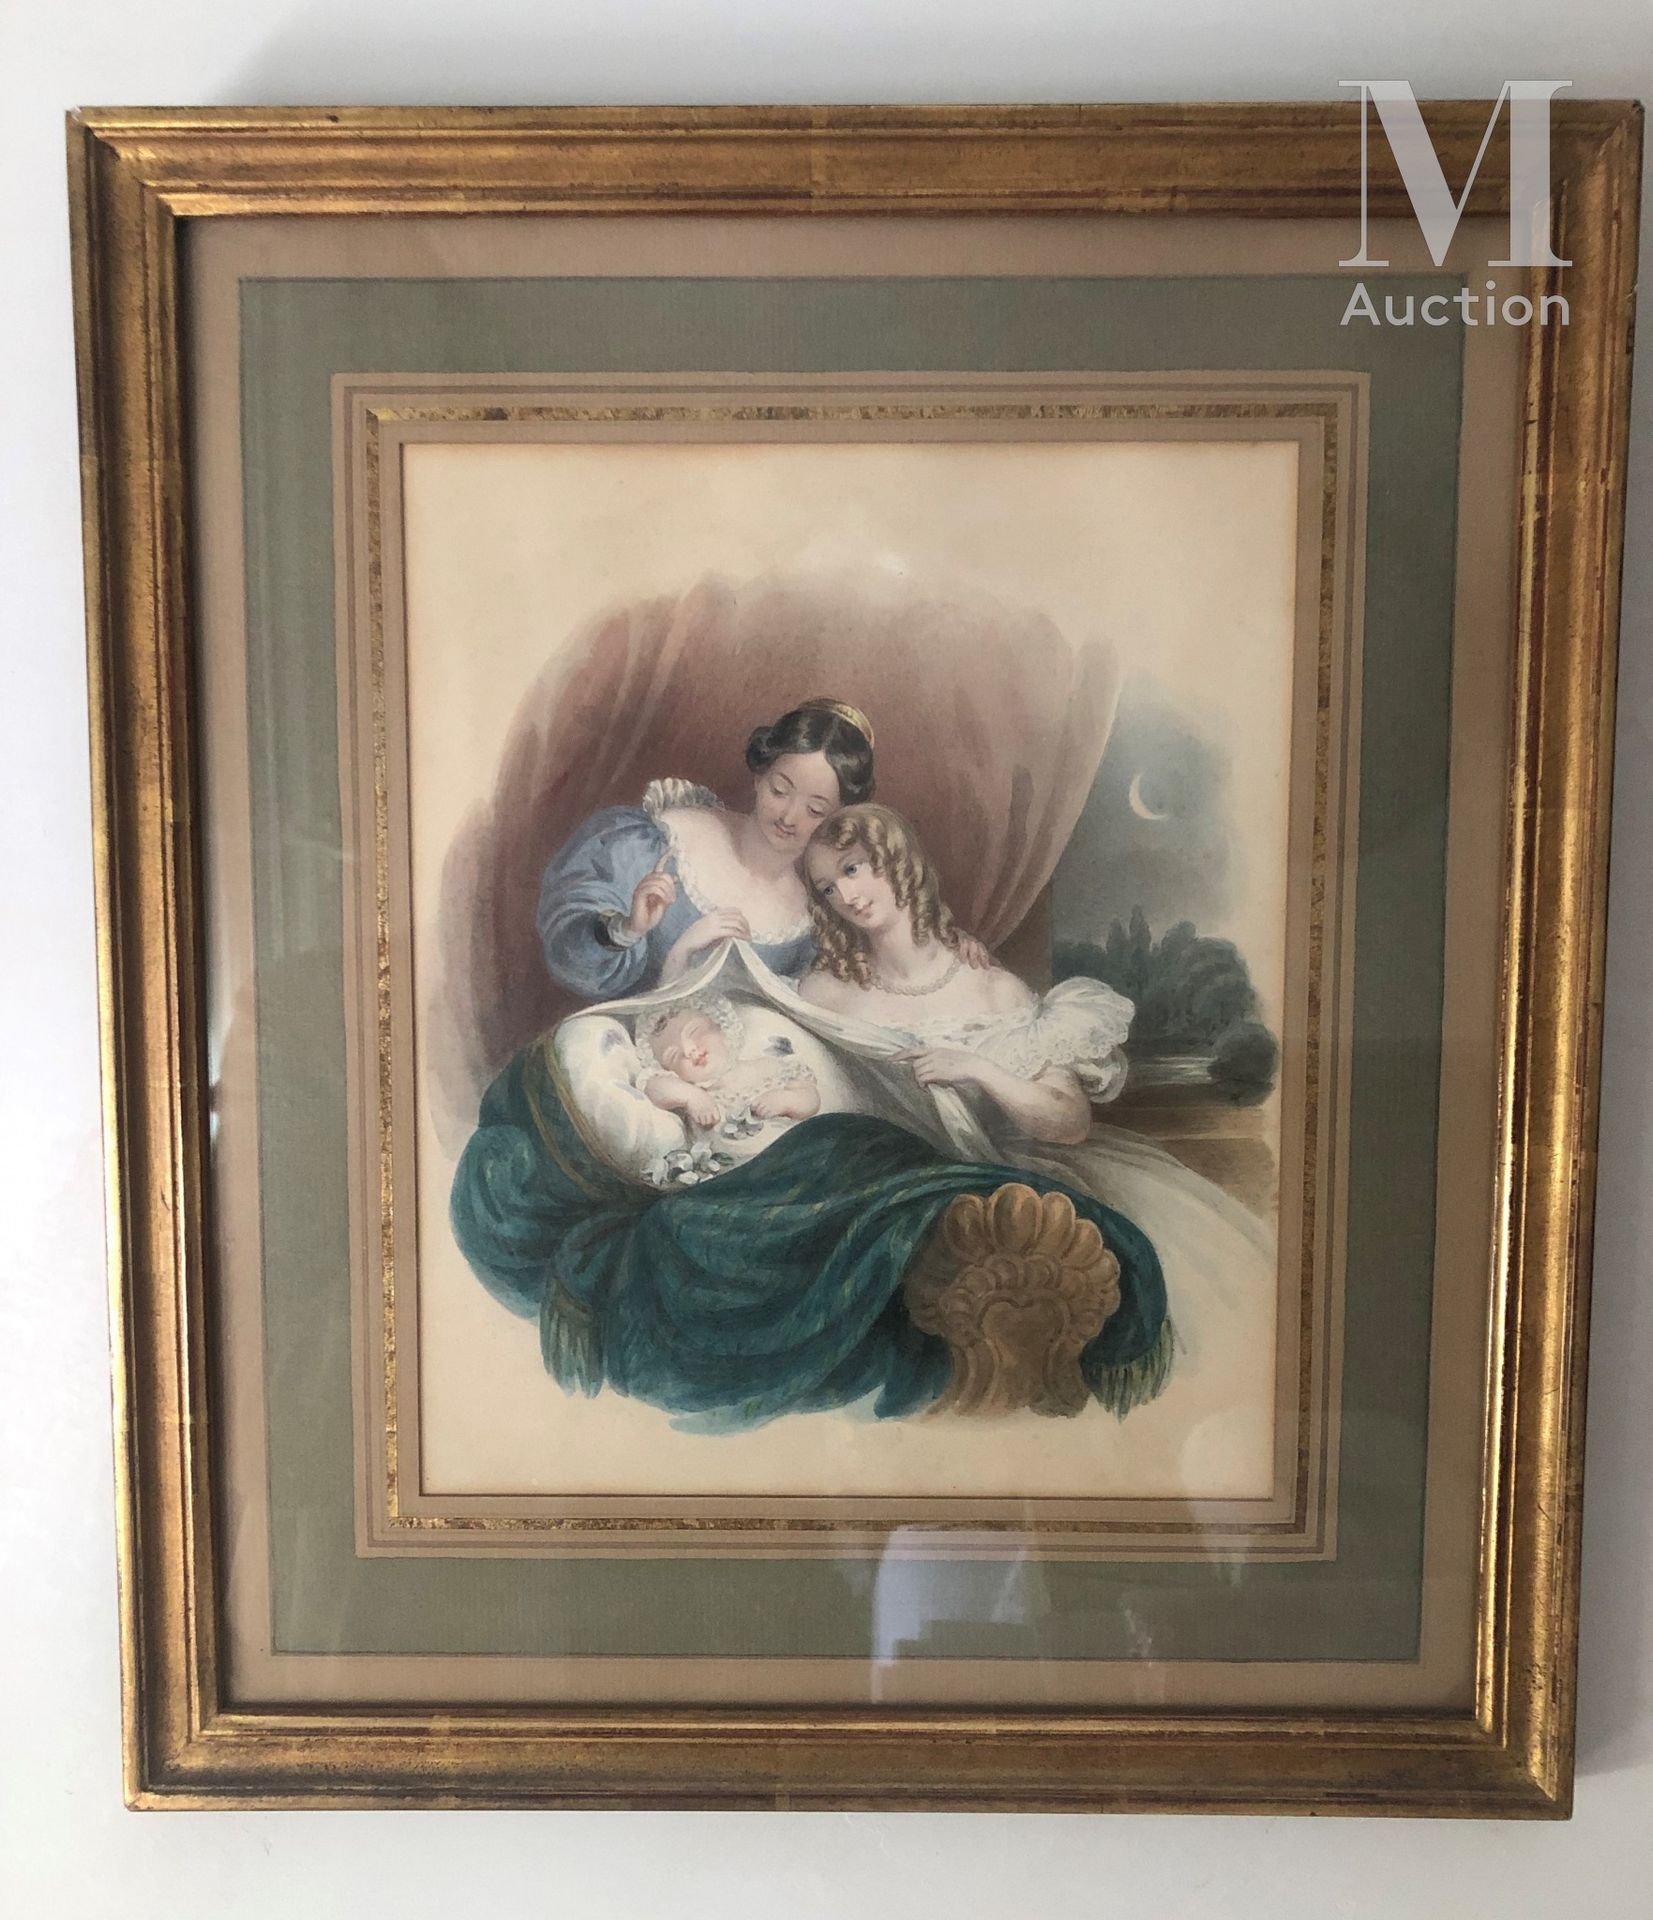 ECOLE FRANCAISE DU XIXème siècle Scène de maternité

Aquarelle 

23,5 x 19 cm.